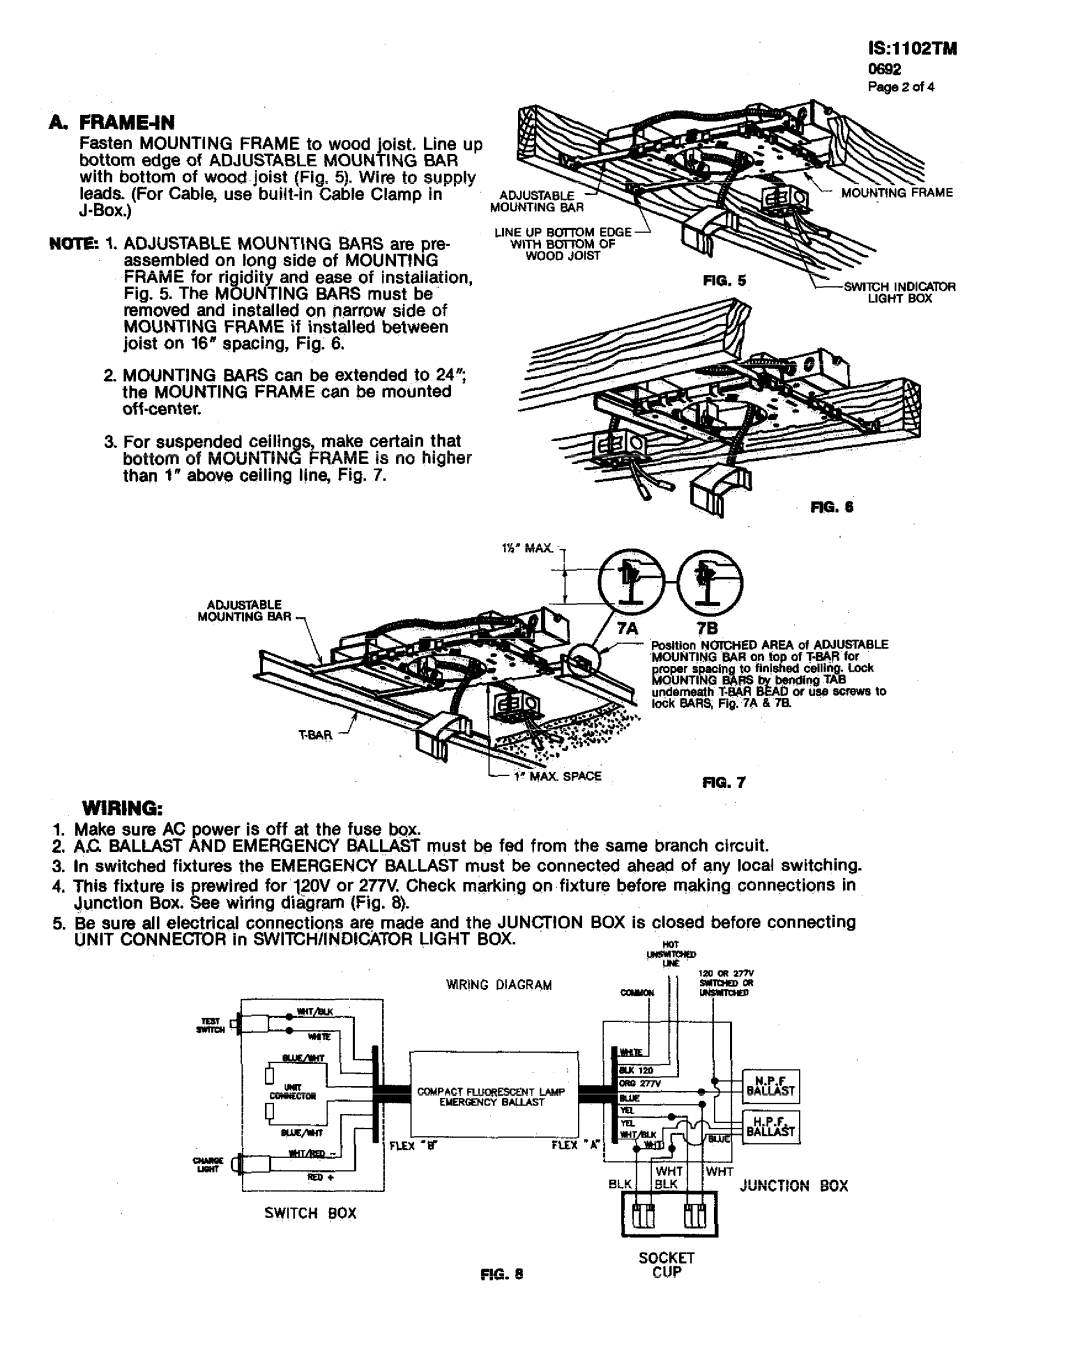 Lightolier 1102TM instruction sheet 1s 1I02TM, A.Frame-In, Wiring, L z~, ~p~~~ 